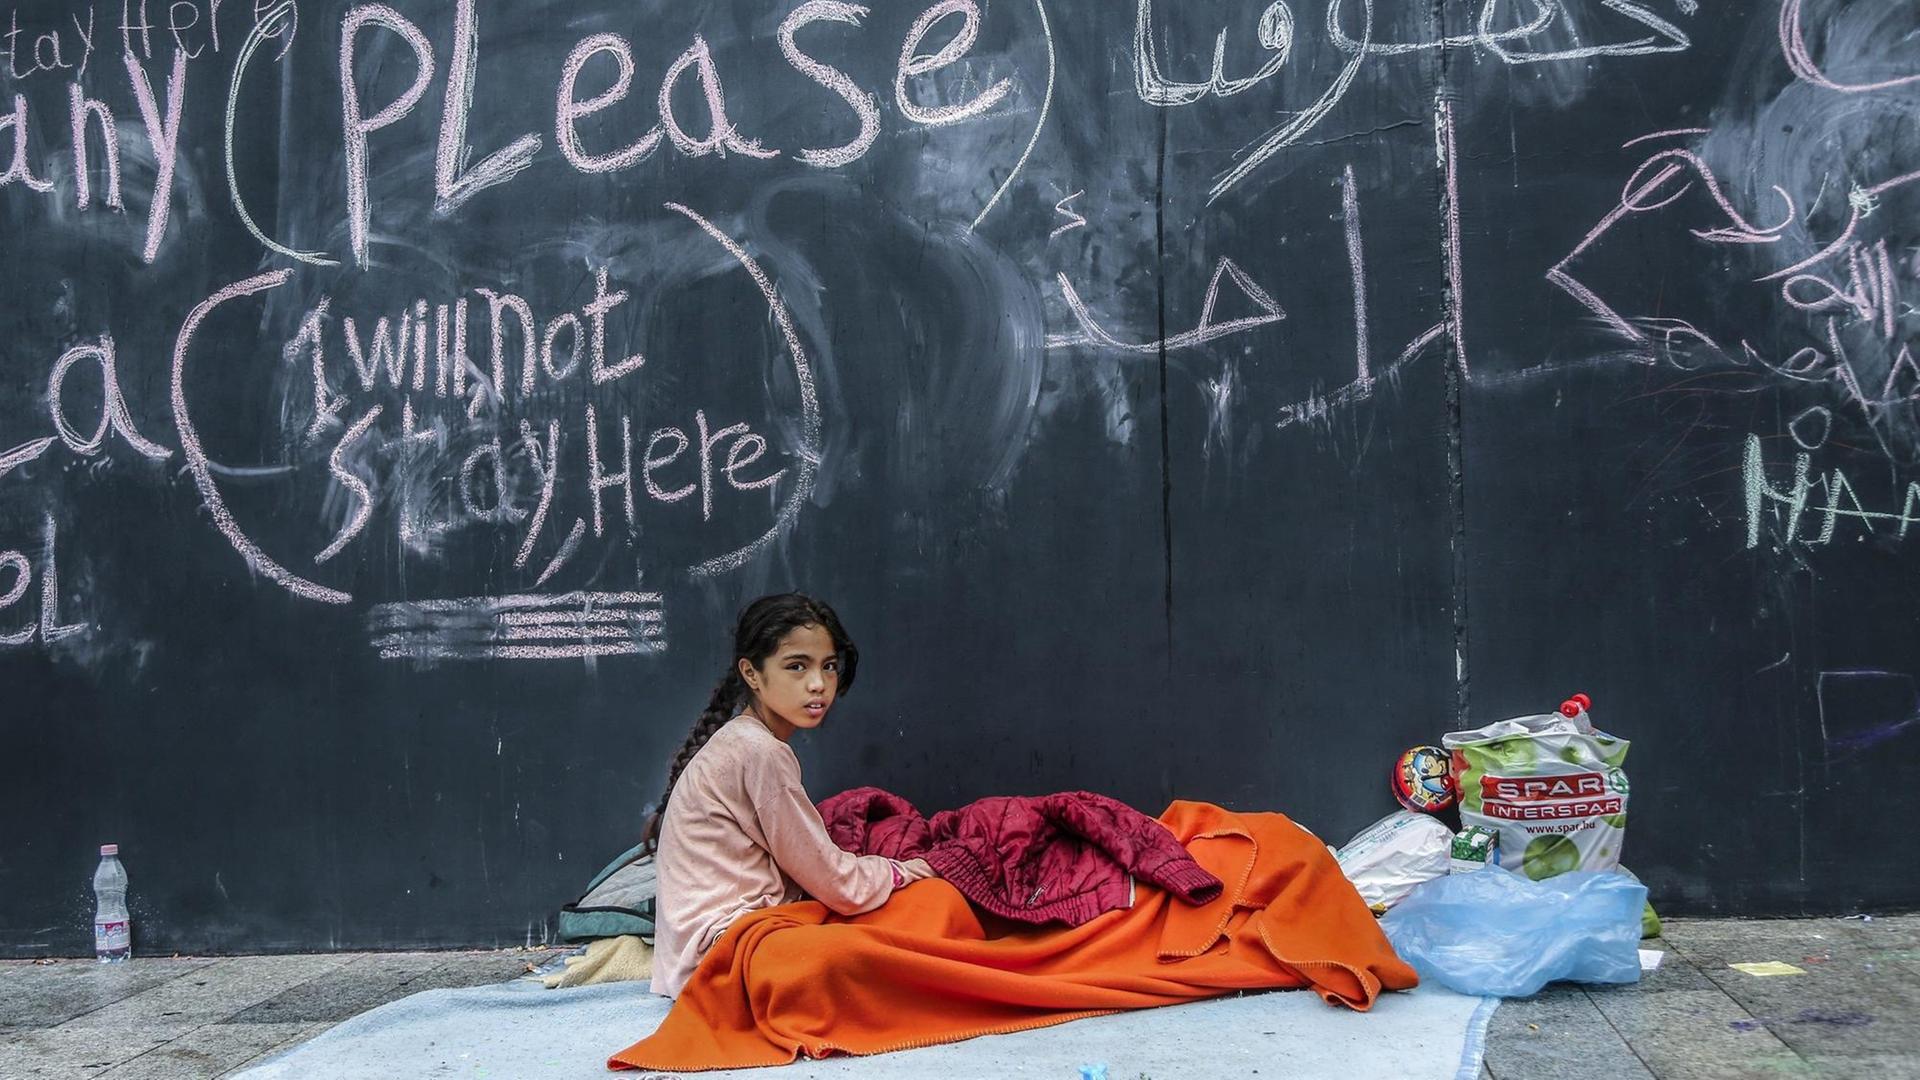 Hunderte Flüchtlinge campierten vor dem Hauptbahnhof in Budapest, Ungarn, während der Flüchtlingskrise 2015. Hier ein jugendliches Mädchen in einem Schlafsack.